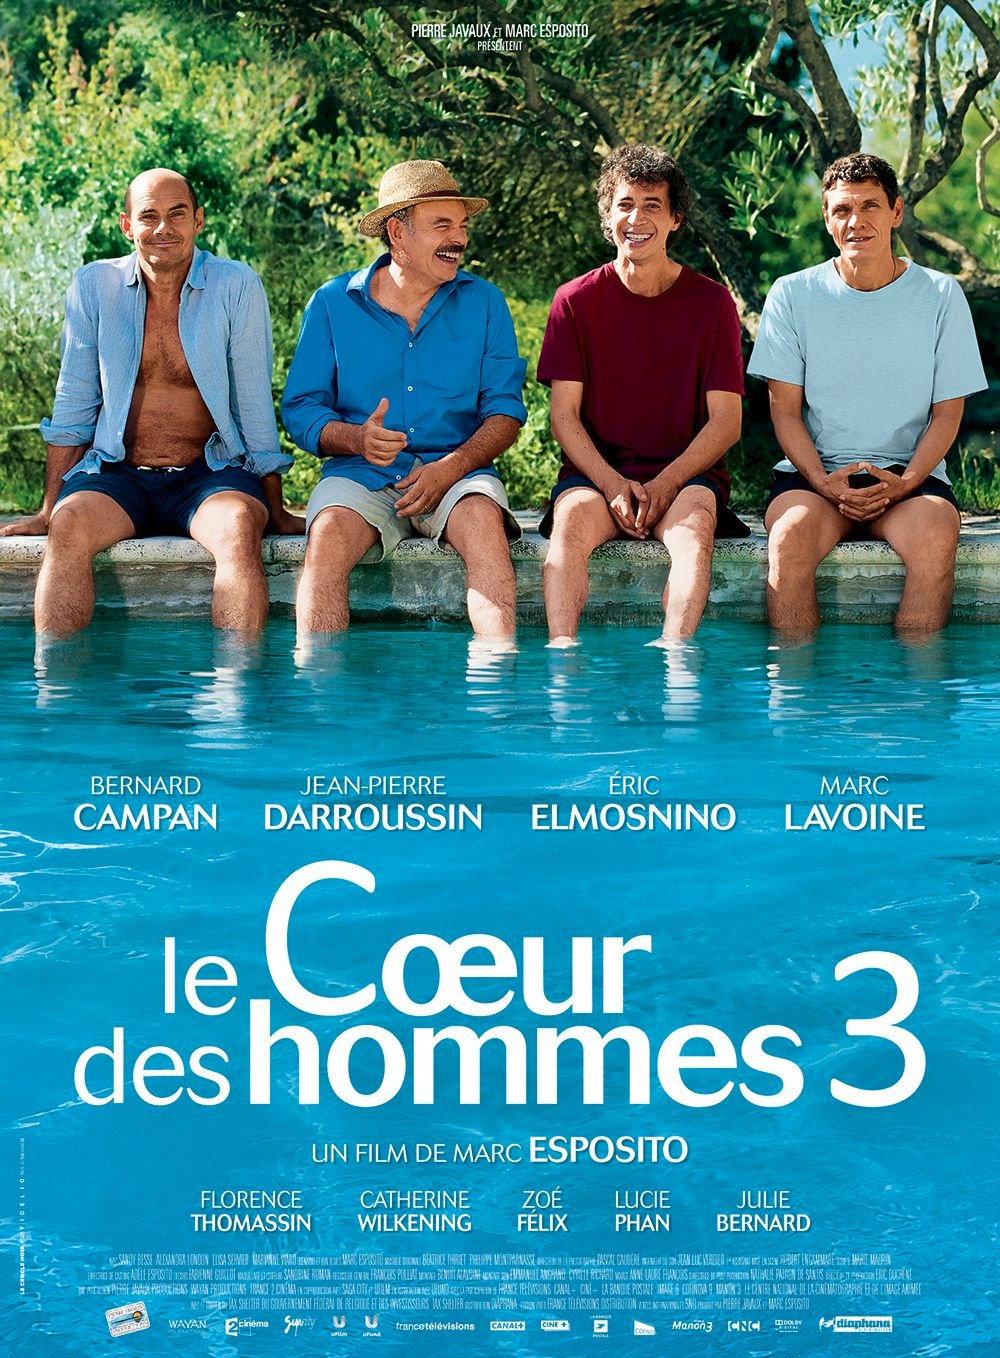 Le Cœur des hommes 3 - Film (2013)